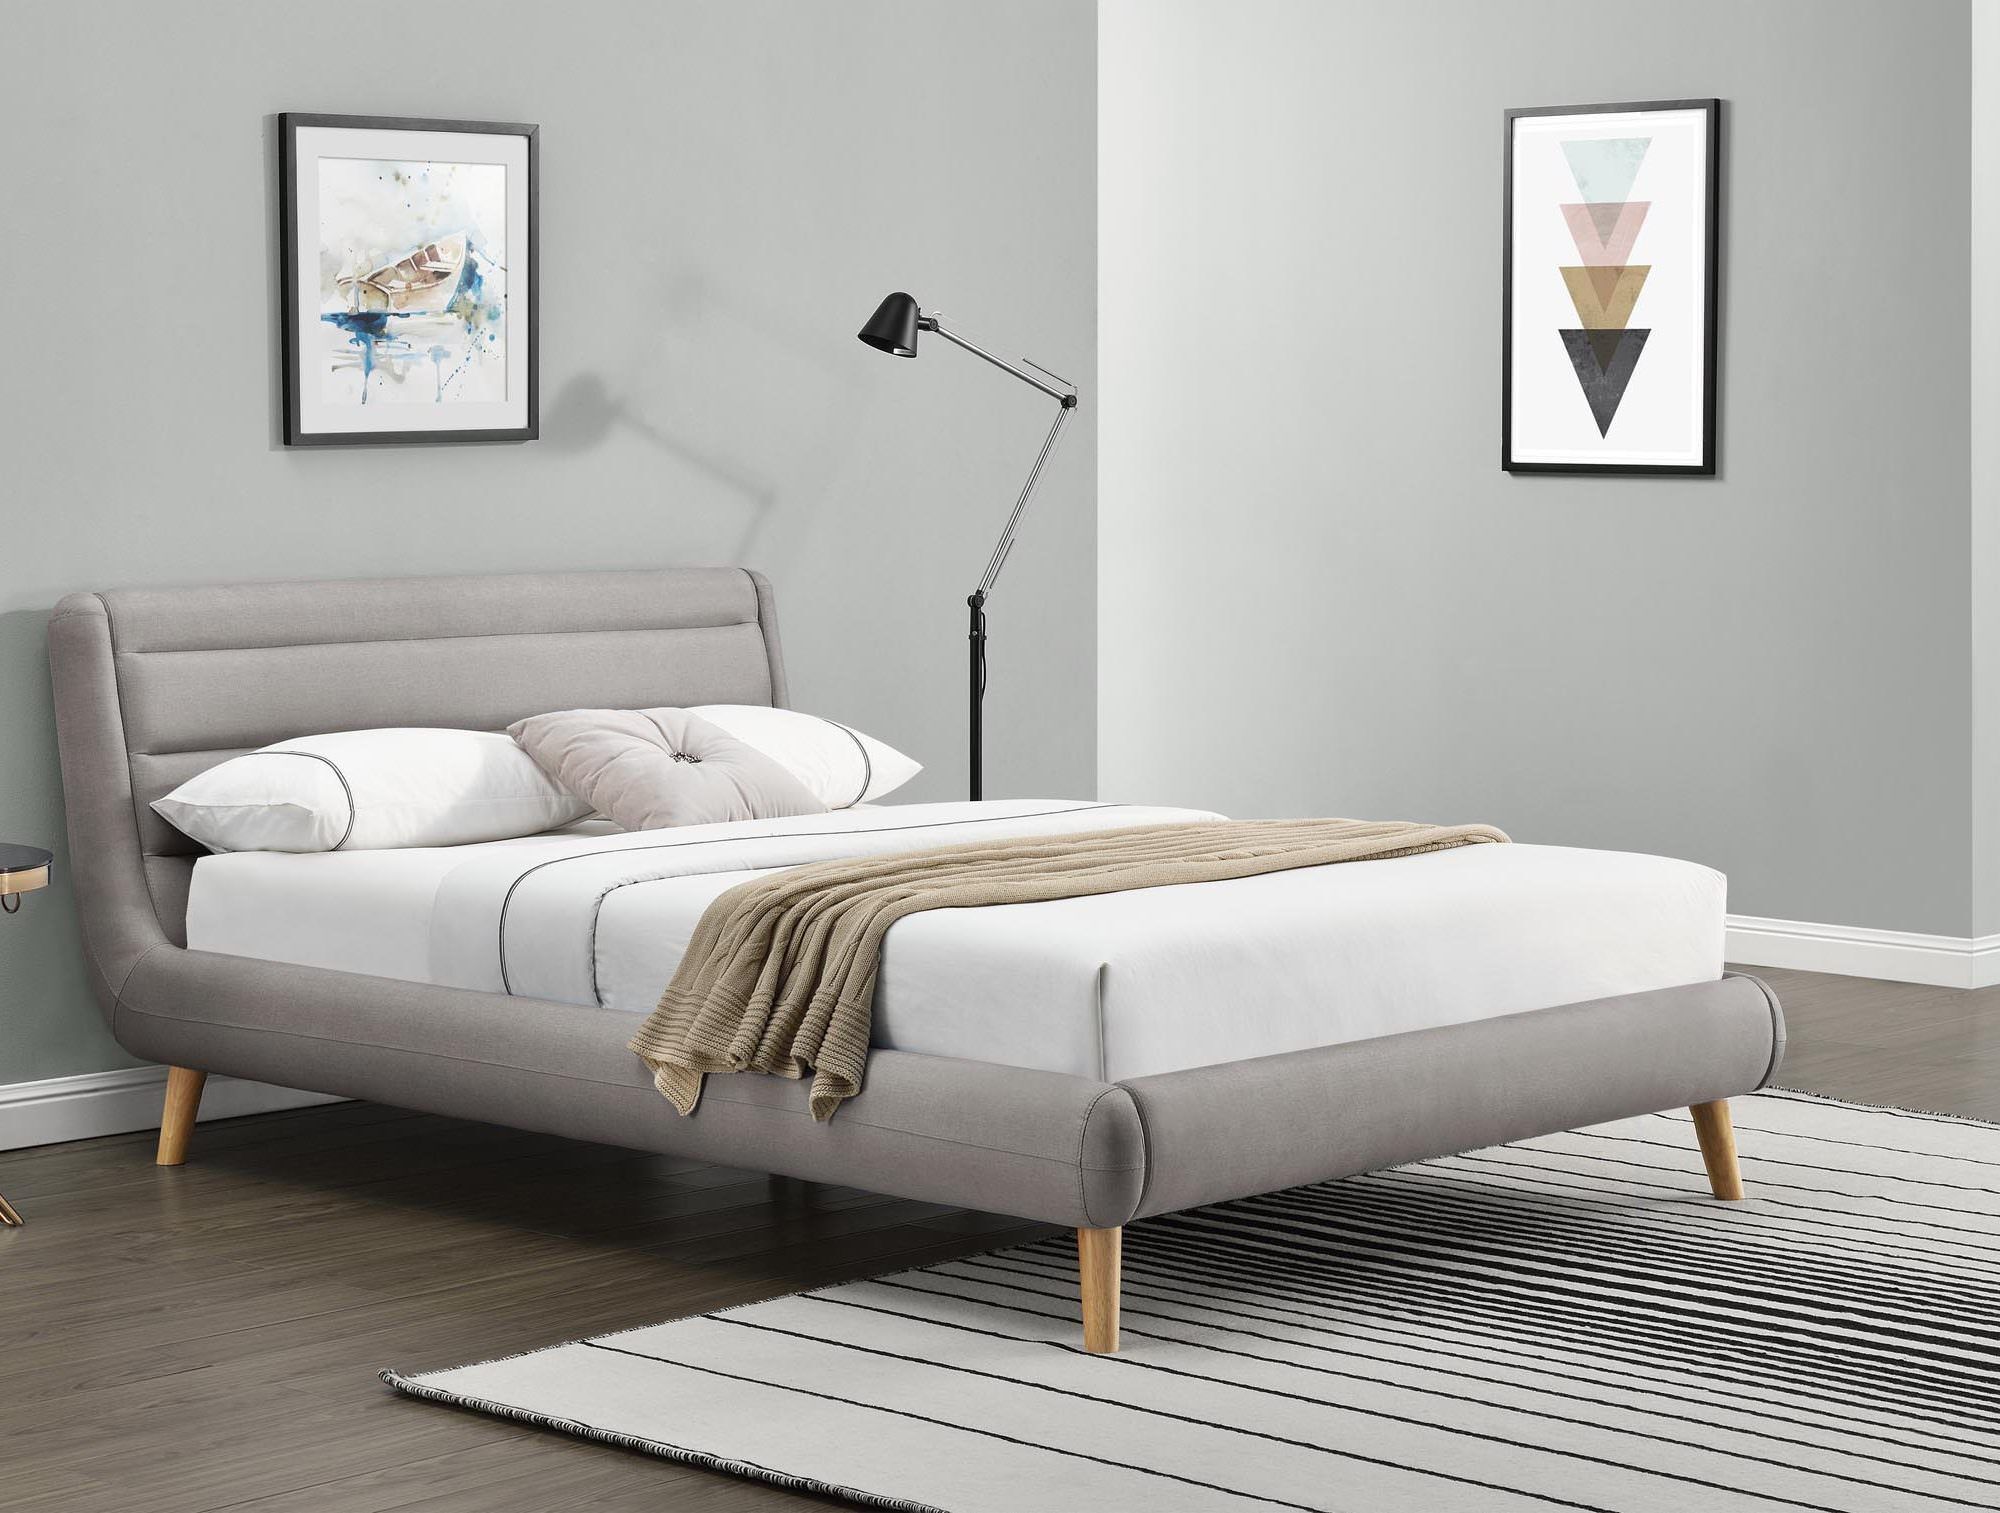 Изголовье кровати в скандинавском стиле